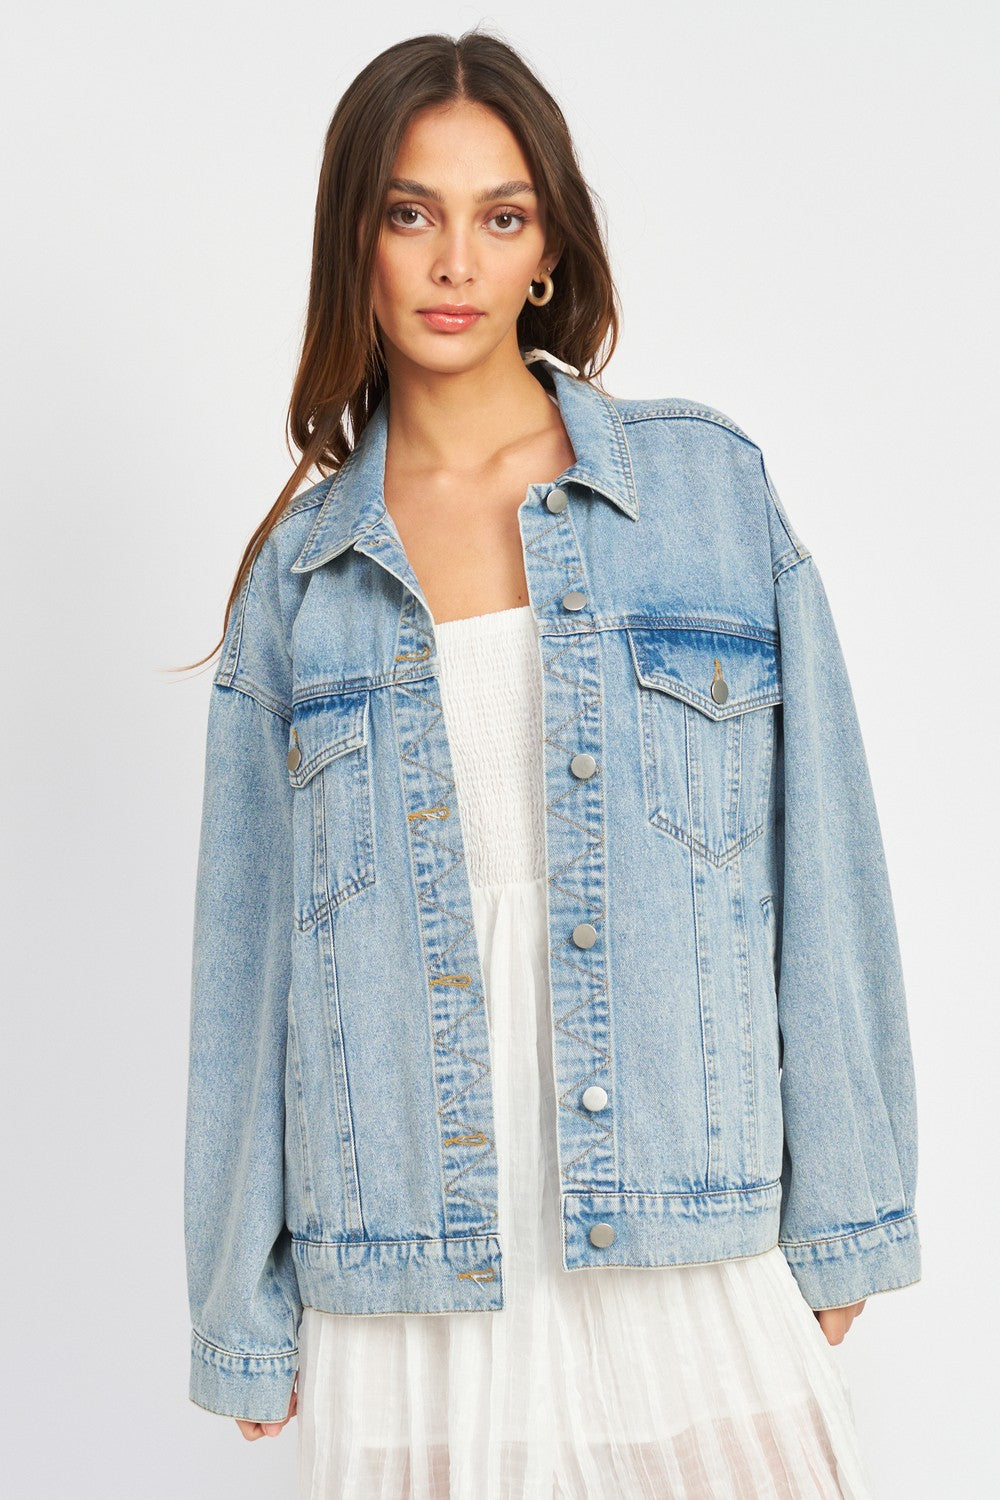 Buy Vero Moda Women Light Blue Denim Jacket - Jackets for Women 706966 |  Myntra